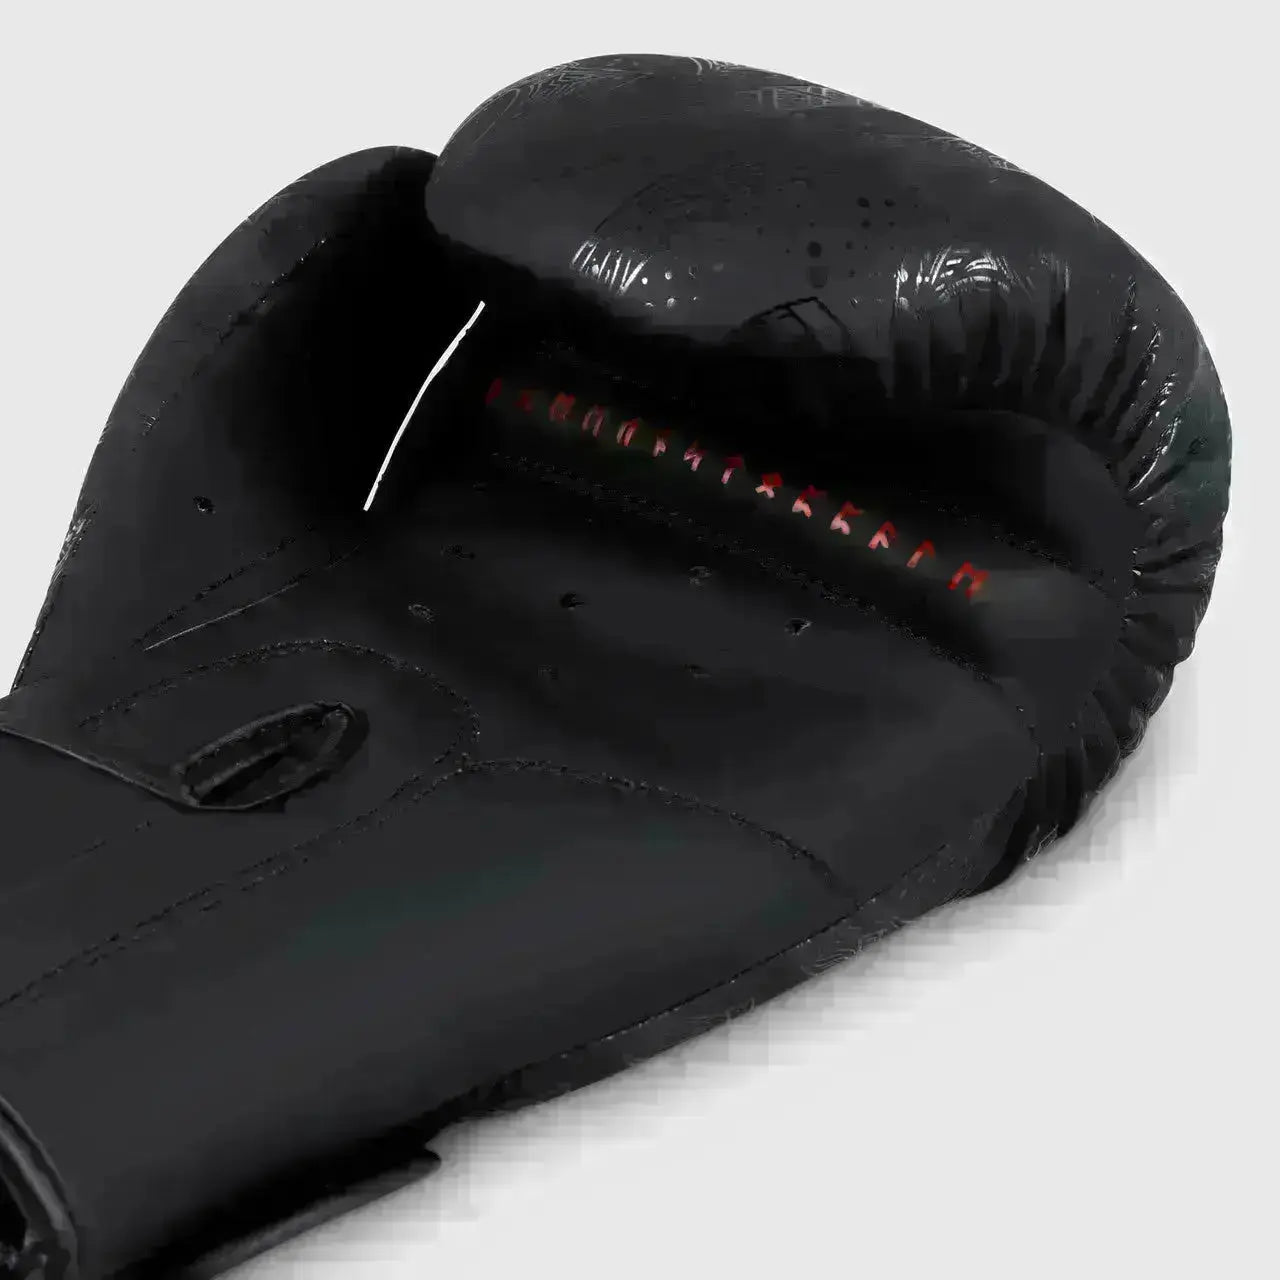 Fumetsu Berserker Boxing Gloves  Fight Co